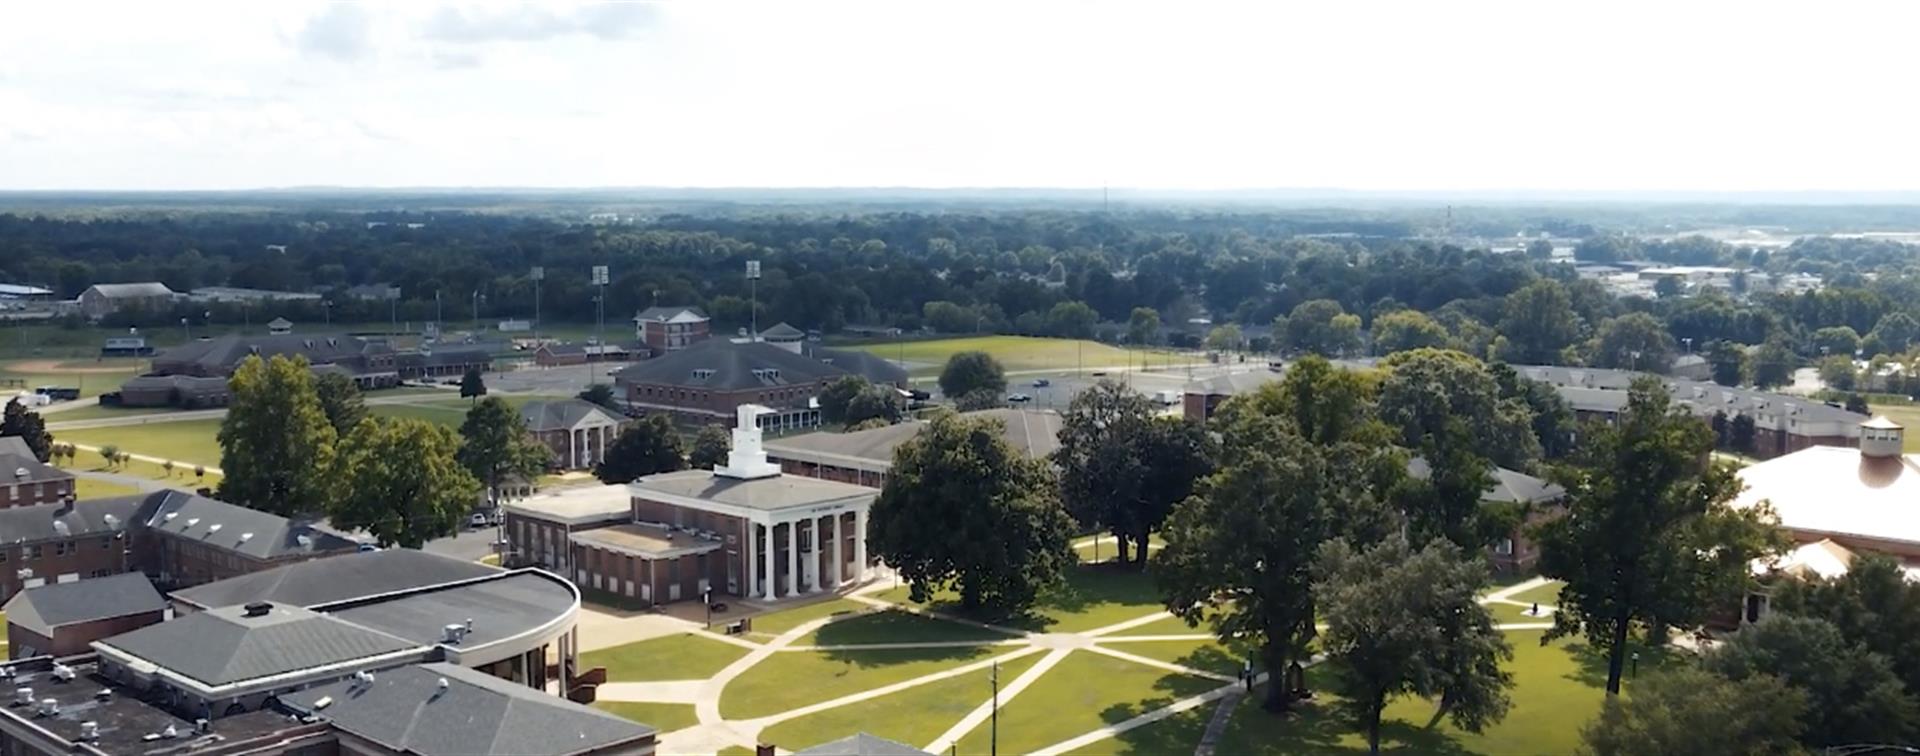 Aerial shot of Stillman College